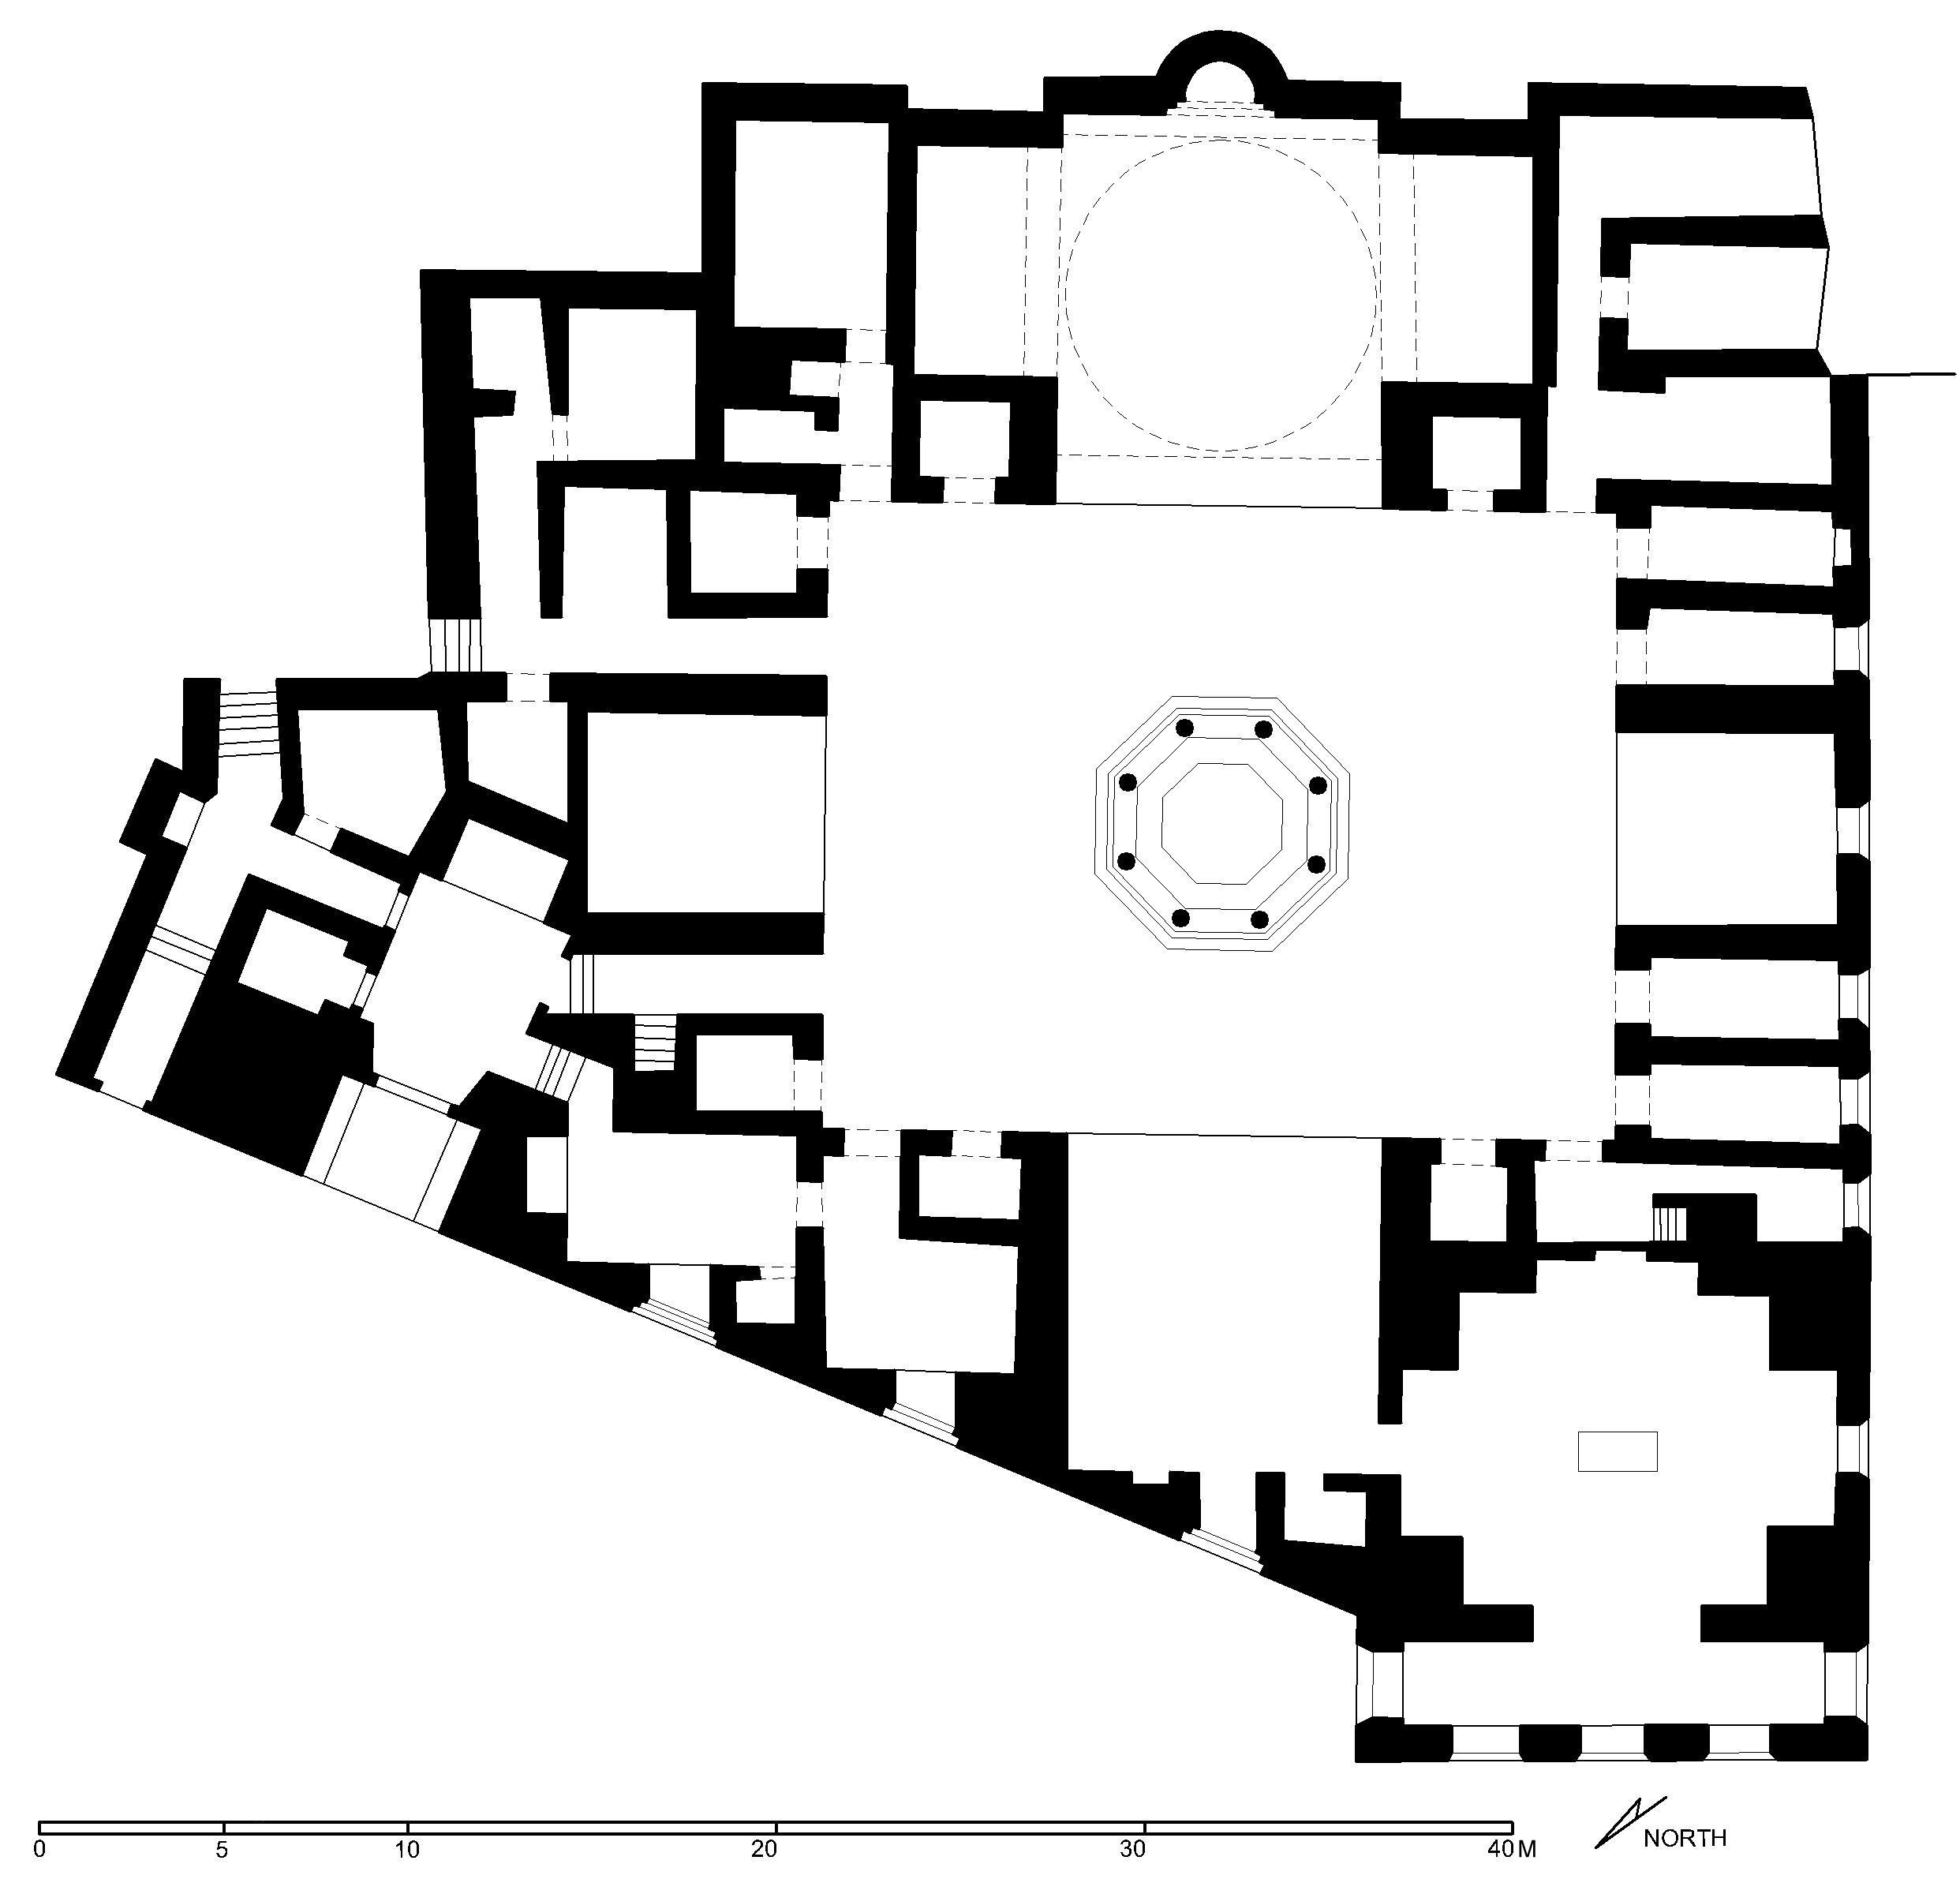 Floor plan of funerary complex (after Meinecke)